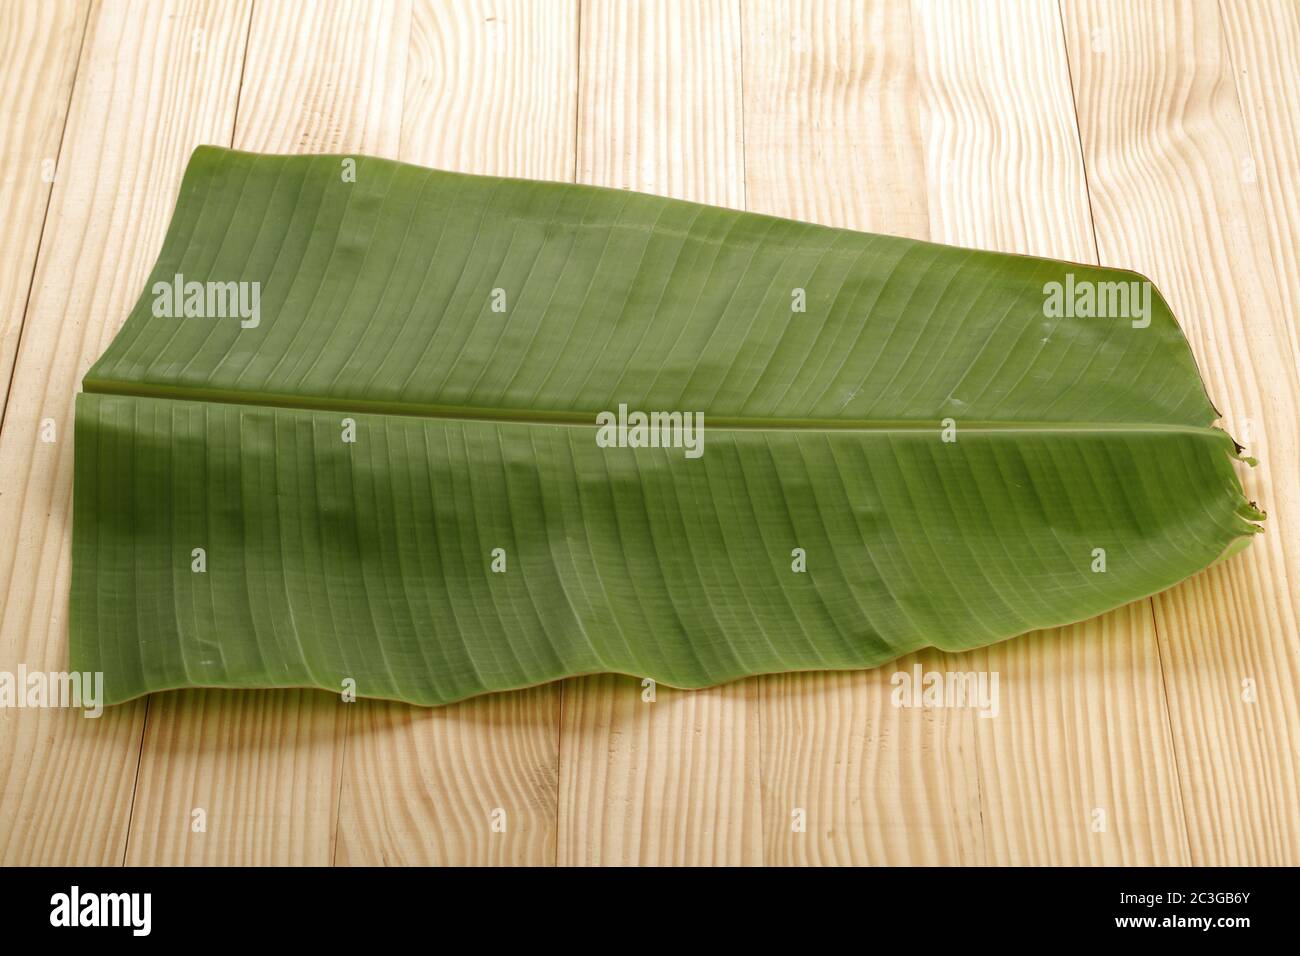 Bananenblatt , Kerala Sadya Blatt, eine traditionell verwendete Teller während des Festes und Festivals, isoliertes Bild von frischen grünen Bananenblatt auf weiß angeordnet Stockfoto